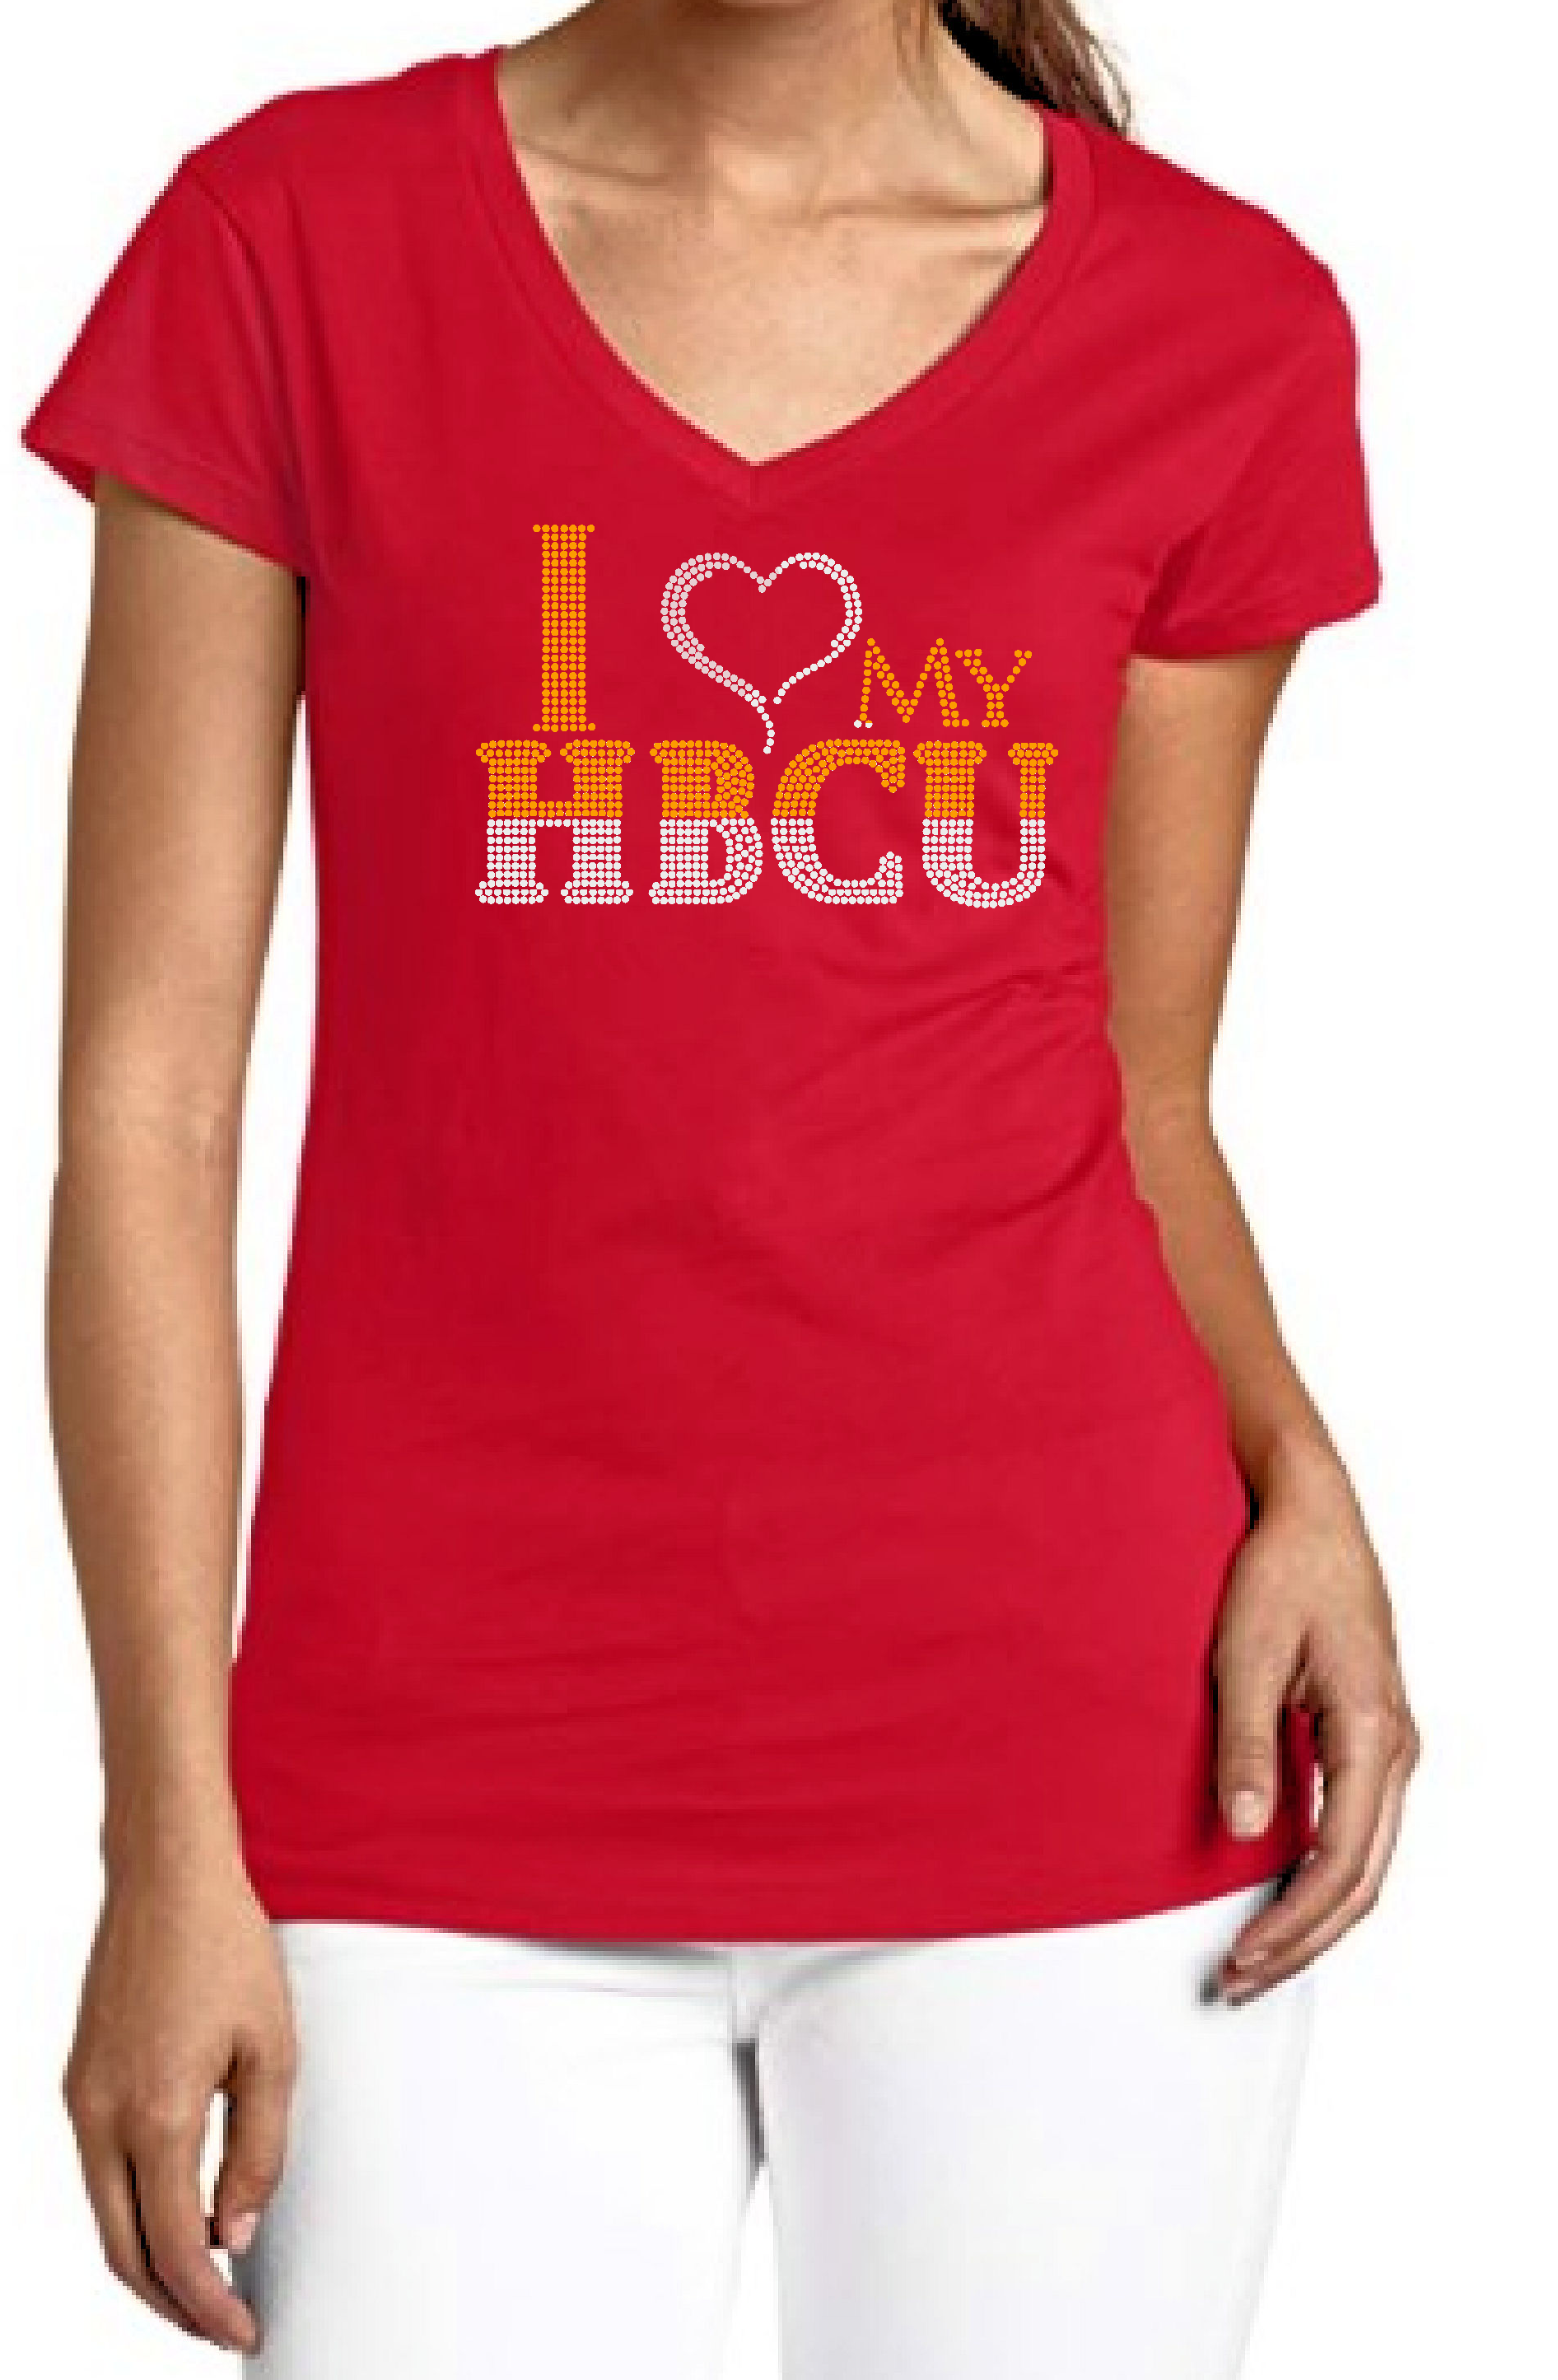 I Love HBCUs Rhinestone T-Shirt